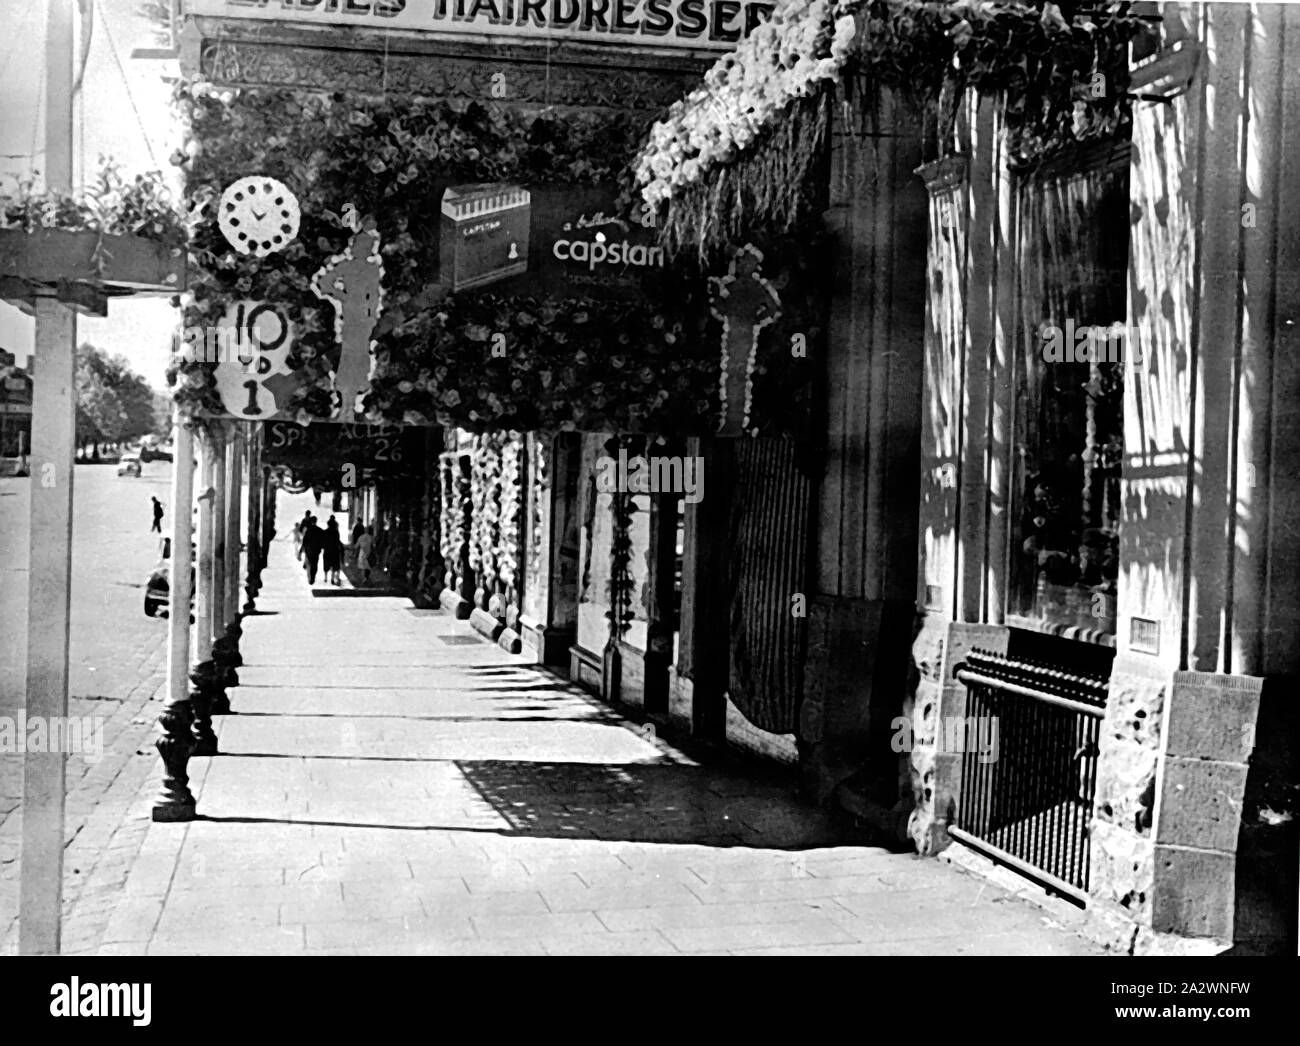 Négatif - bureau de tabac décoré pour les célébrations du centenaire, Ballarat, Victoria, en 1938, un bureau de tabac shop & hairdresser's saloon décoré pour la fête du centenaire de Ballarat Banque D'Images